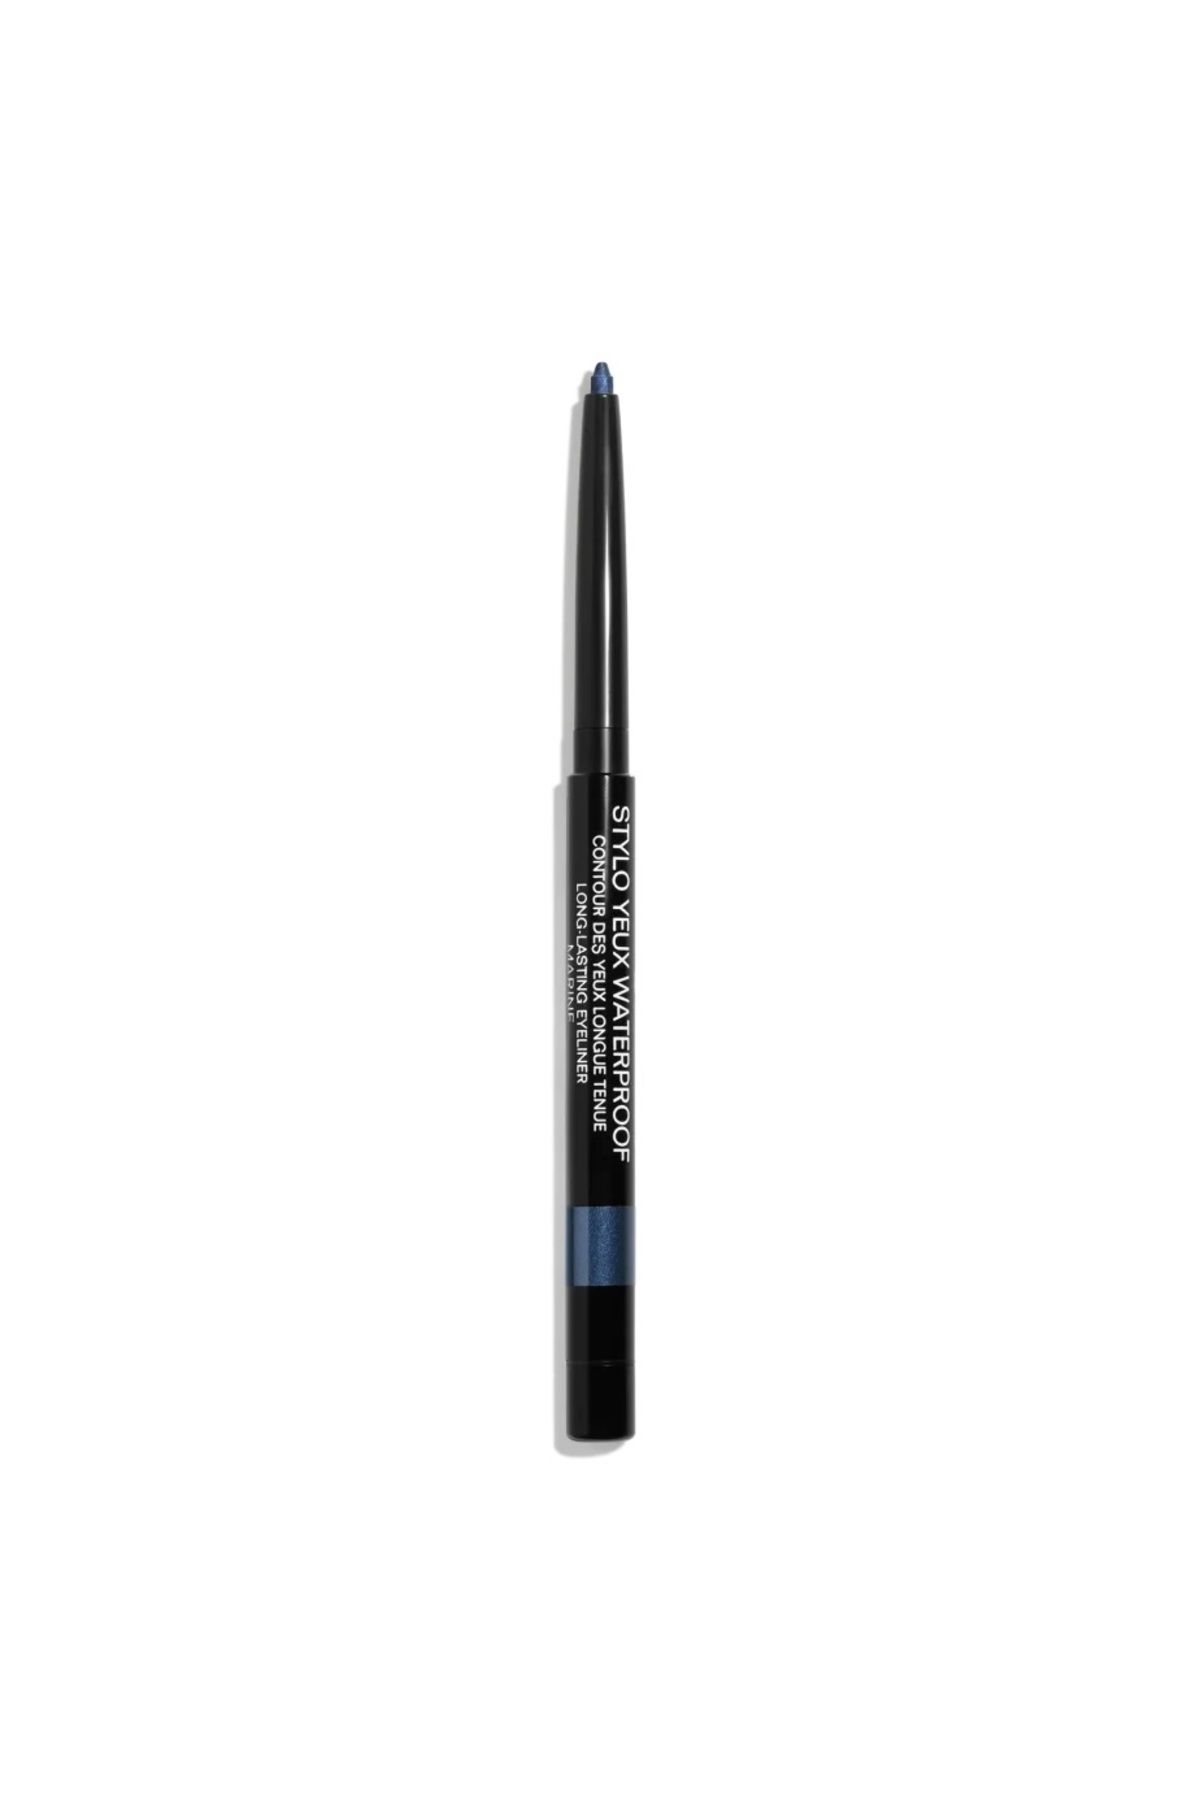 Chanel STYLO YEUX WATERPROOF - Suya Dayanıklı Uzun Süre Kalıcı Işıltı Verici Göz Kalemi